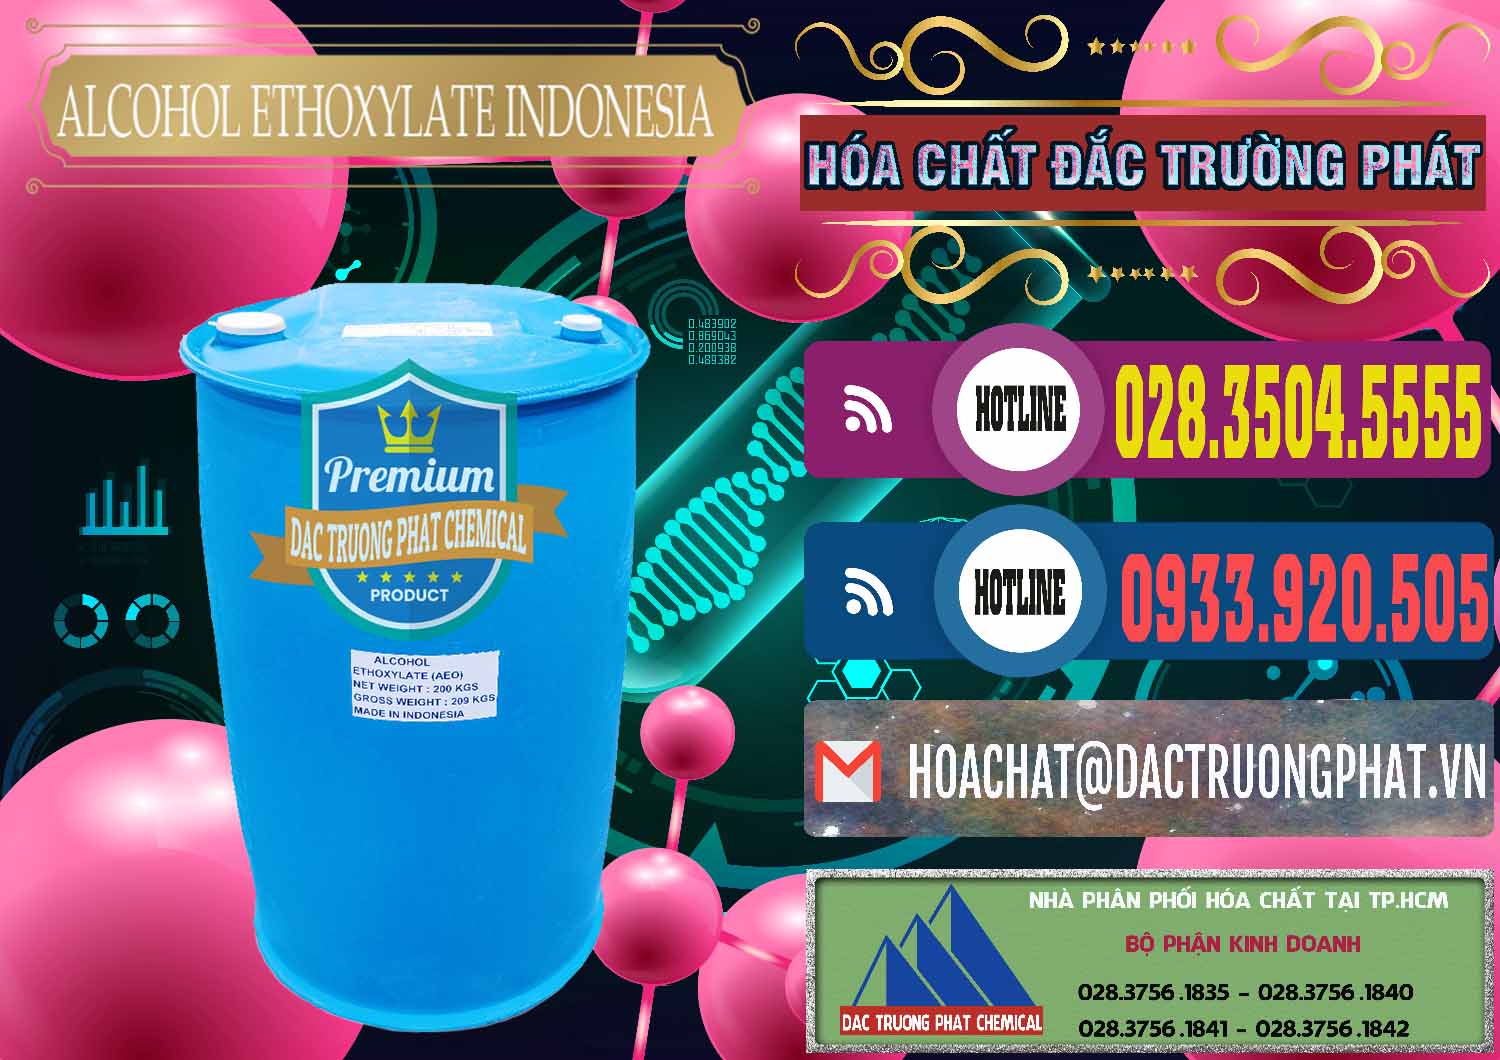 Nơi chuyên kinh doanh _ bán Alcohol Ethoxylate Indonesia - 0308 - Đơn vị cung ứng và phân phối hóa chất tại TP.HCM - muabanhoachat.com.vn